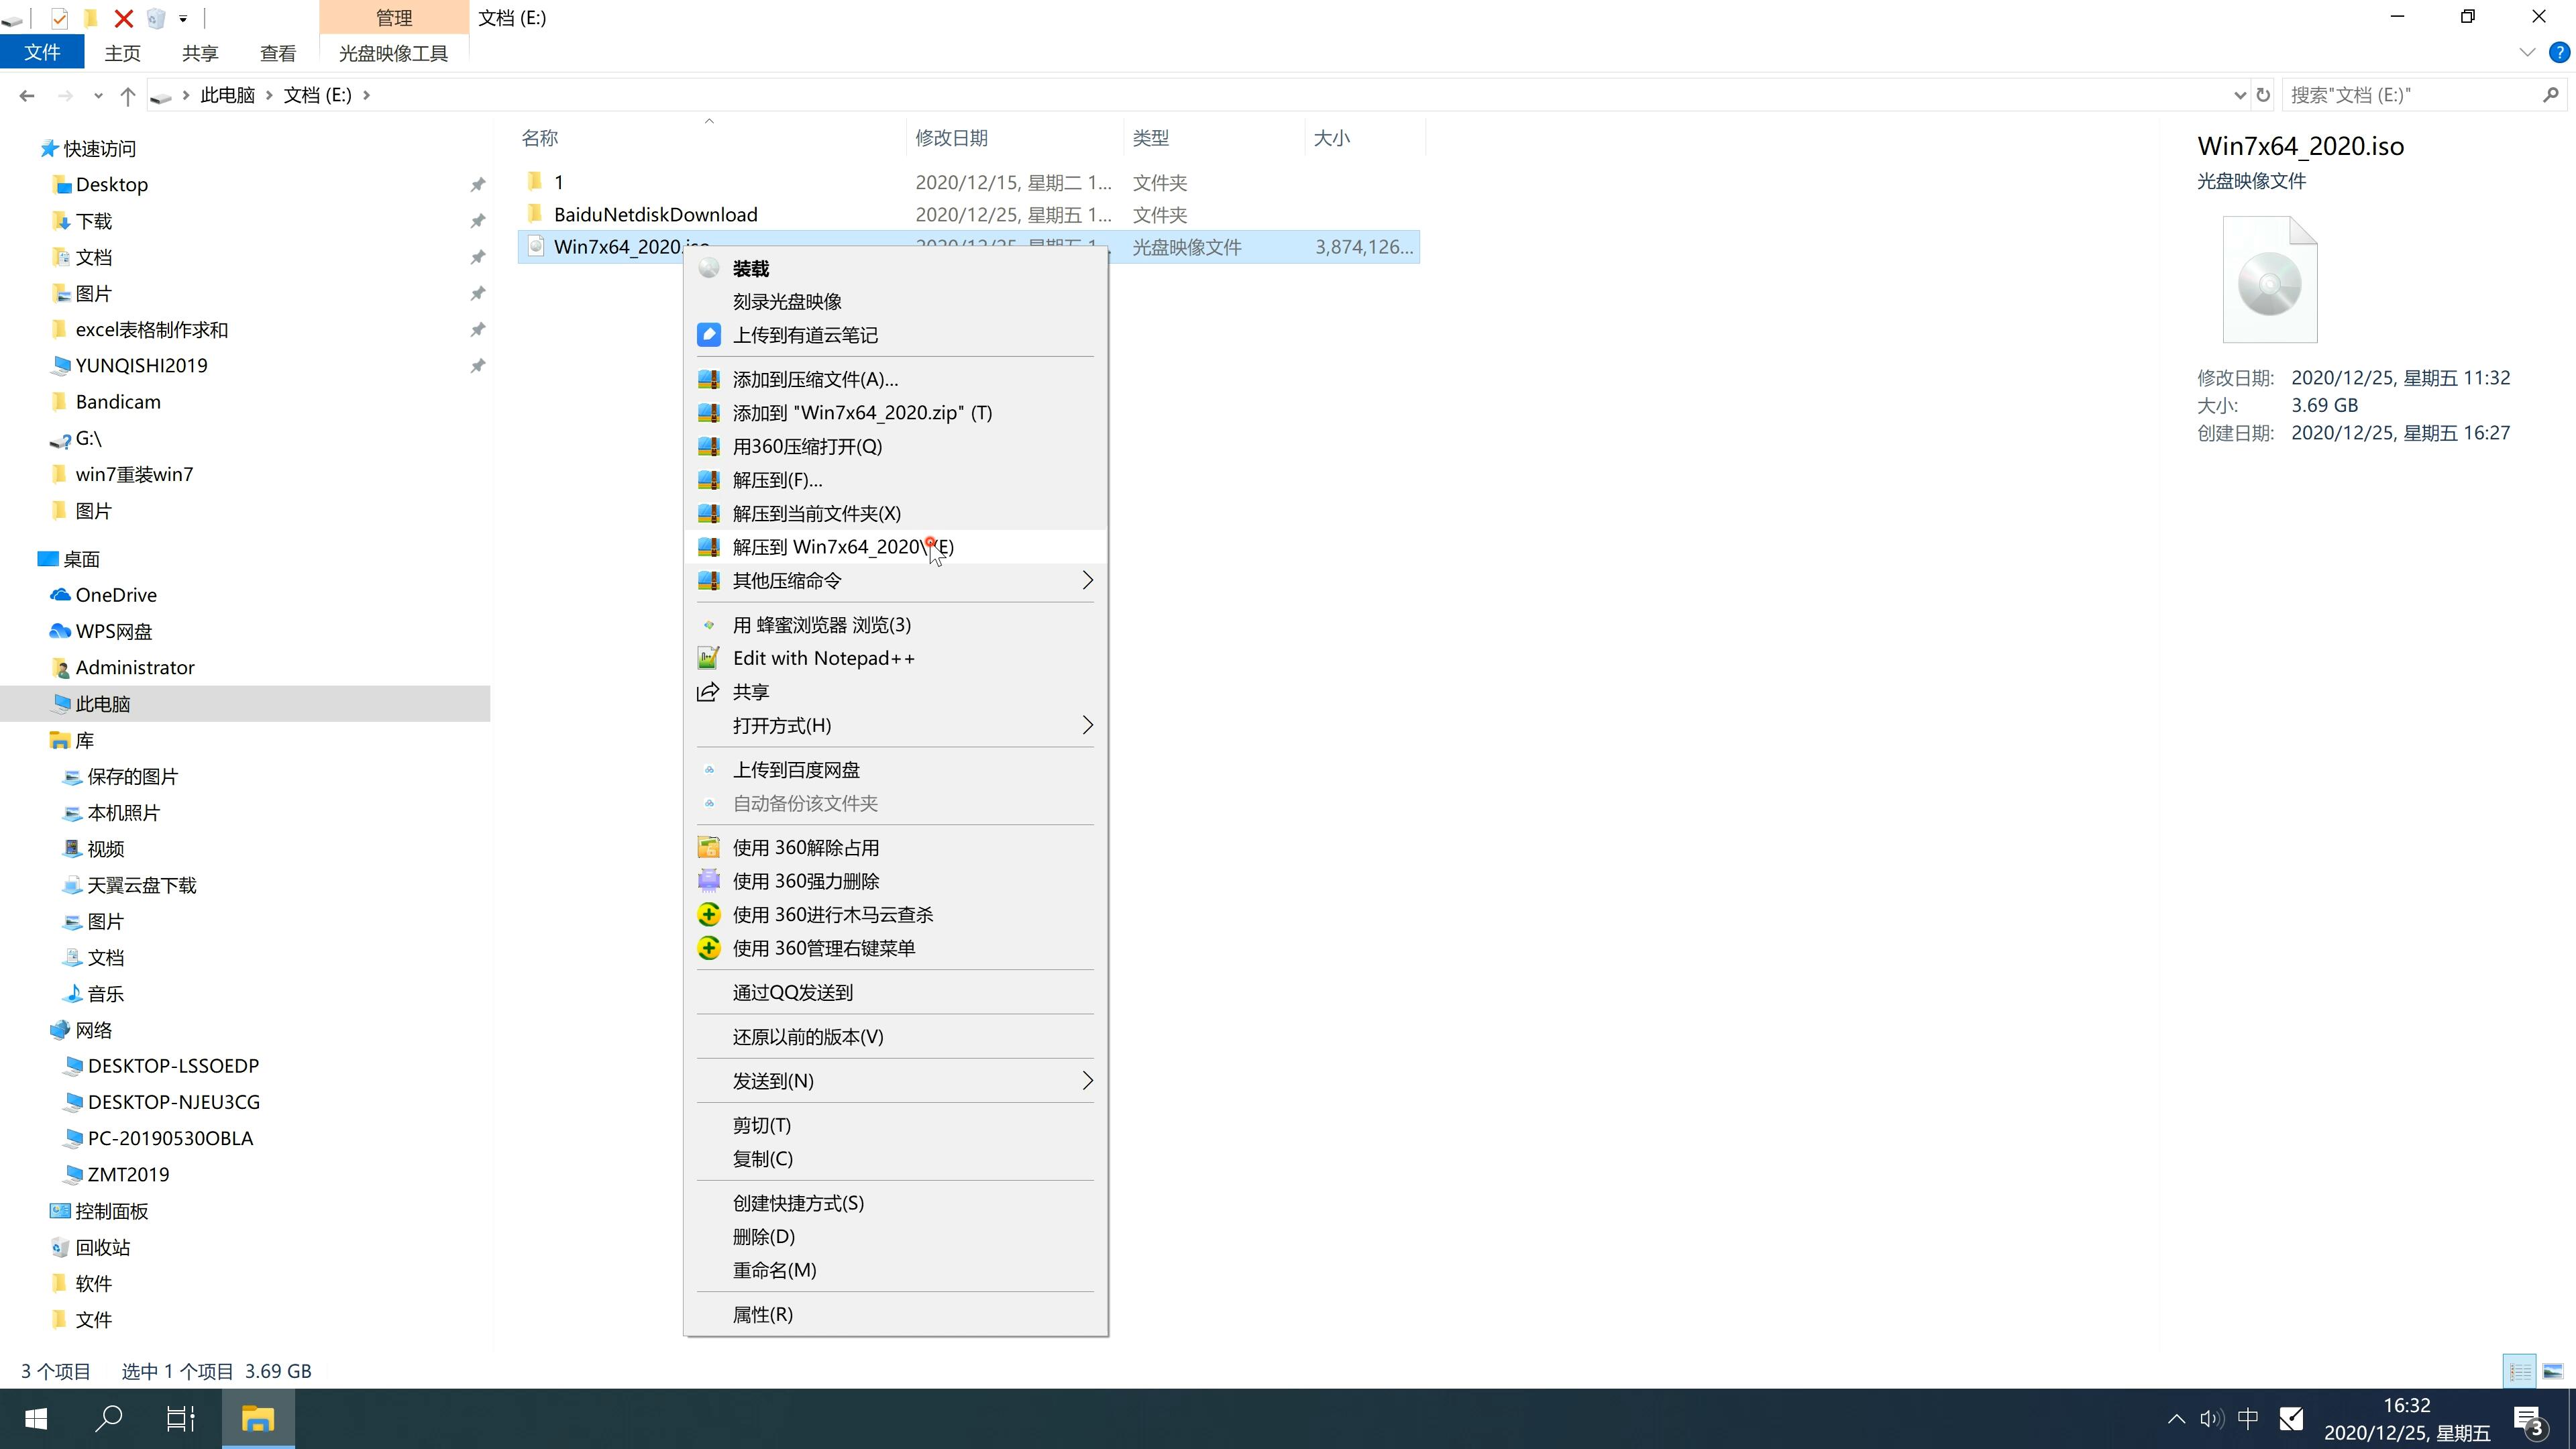 新台式机专用系统  windows7 x64  官方稳定版 V2021.01(2)